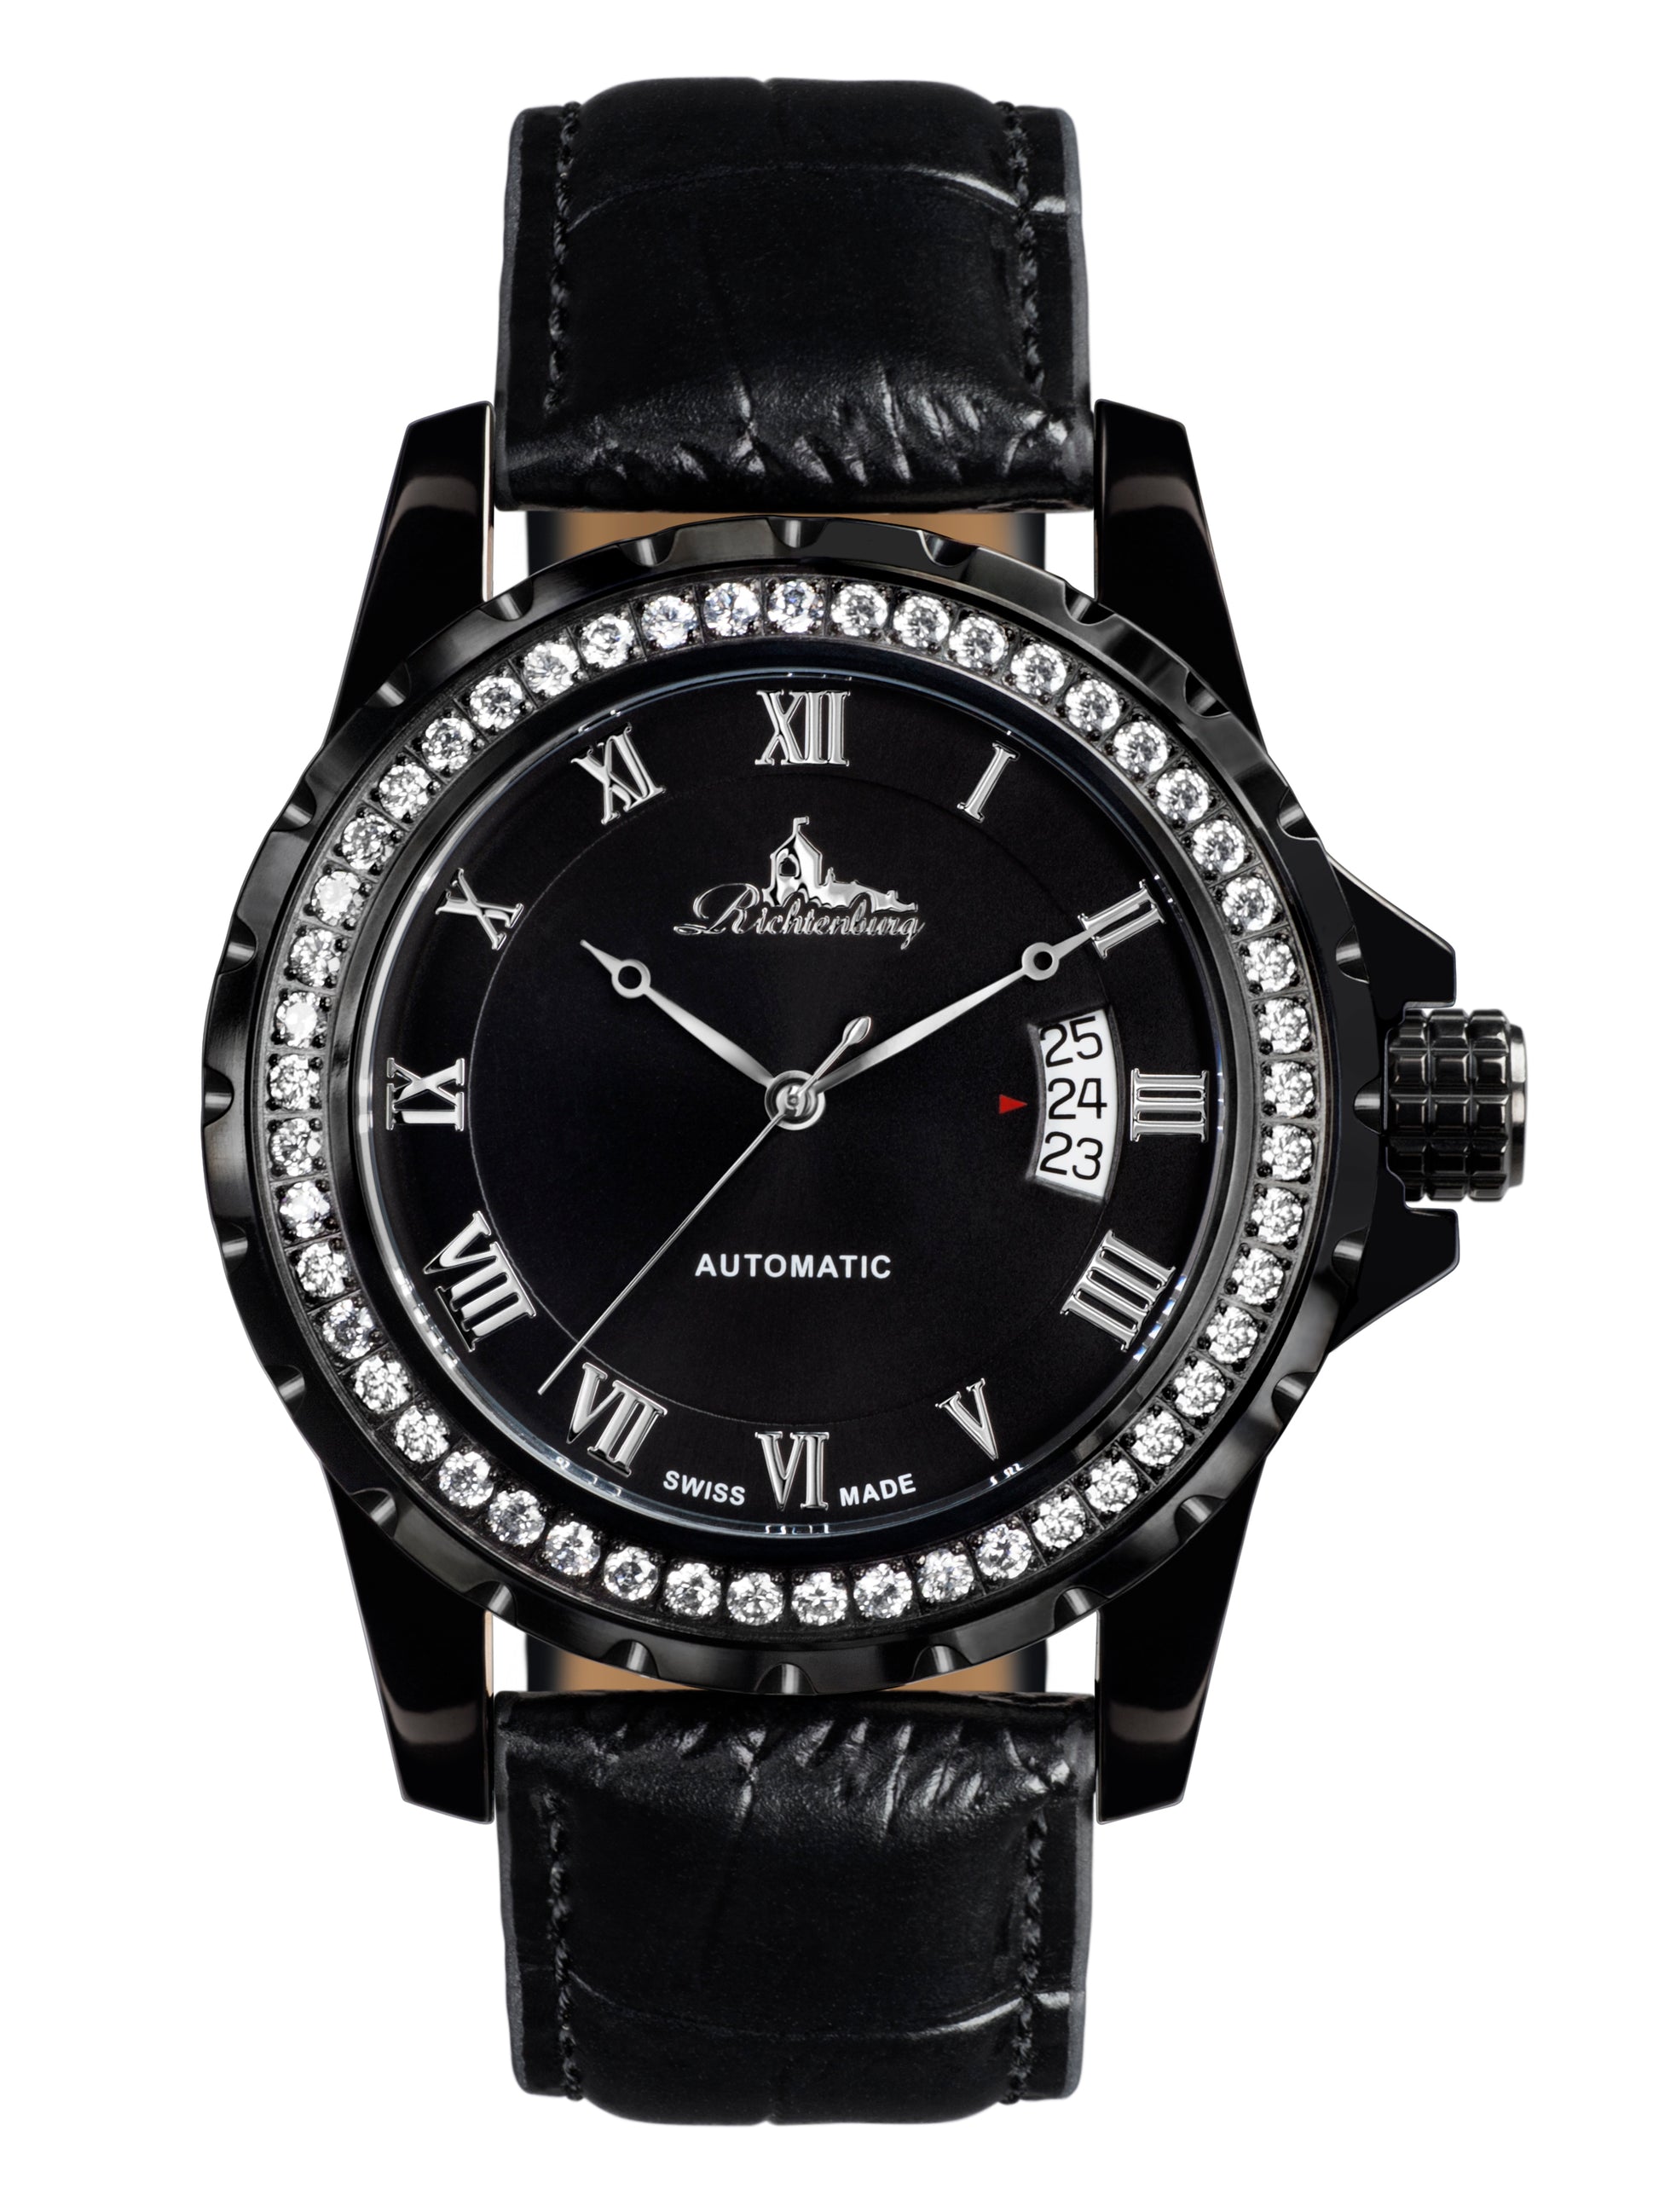 Automatic watches — Clasica — Richtenburg — gold IP